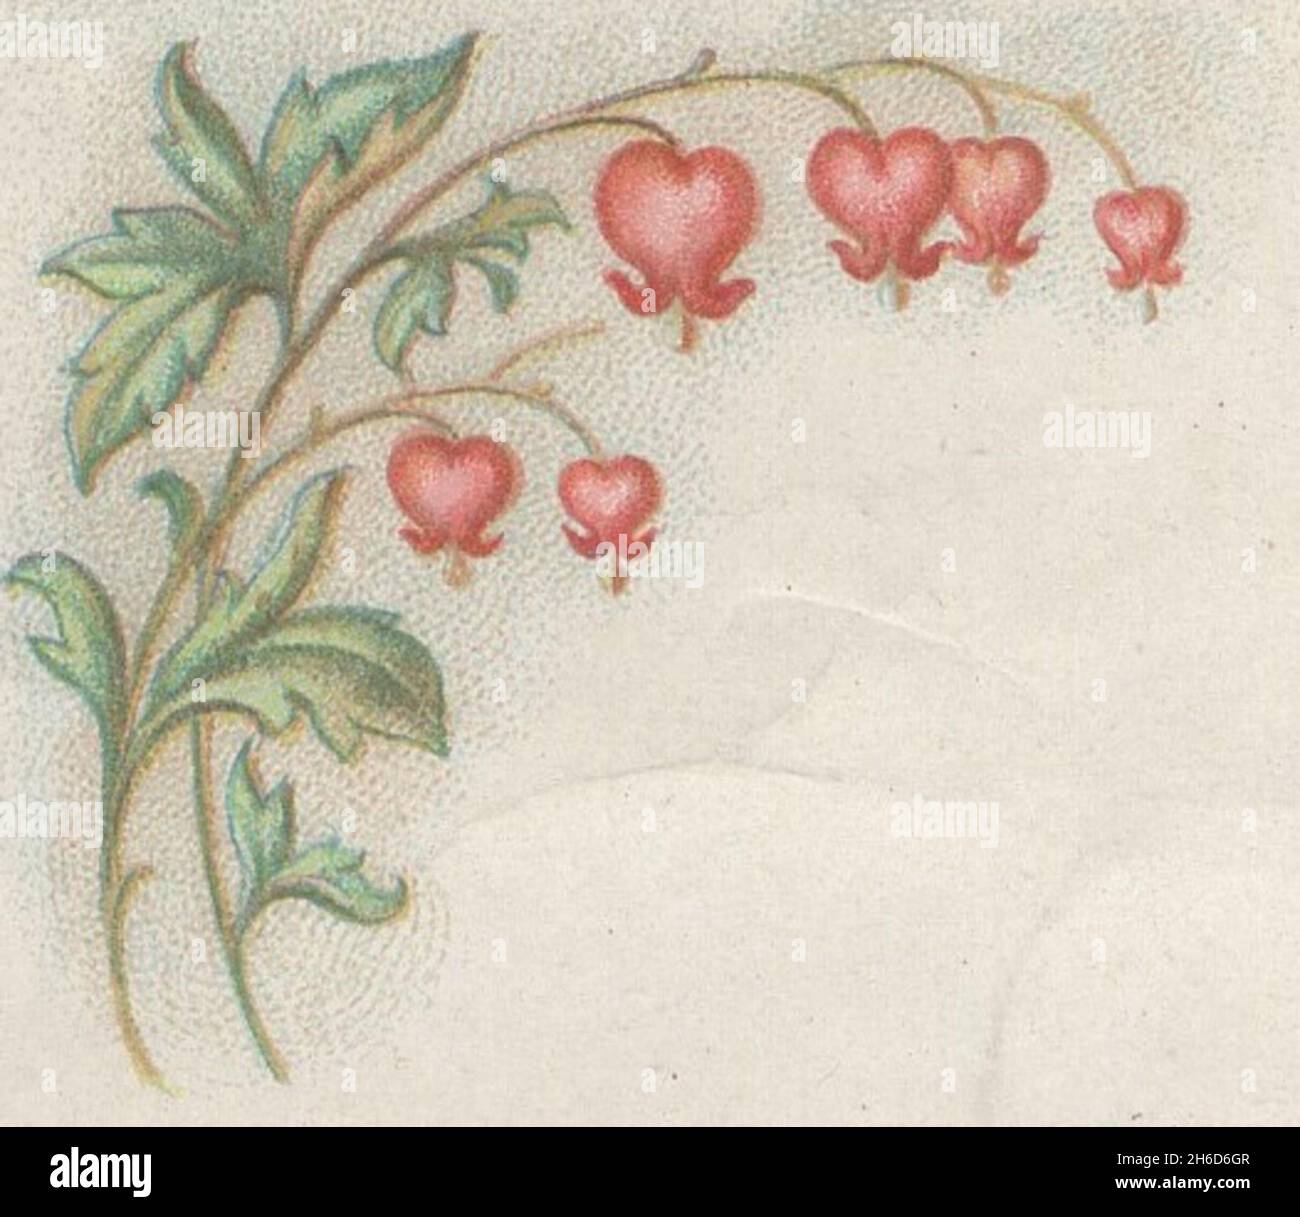 Antiguas obras gráficas del siglo 19th de artista desconocido. Hermoso manojo de flores silvestres rojas. Foto de stock